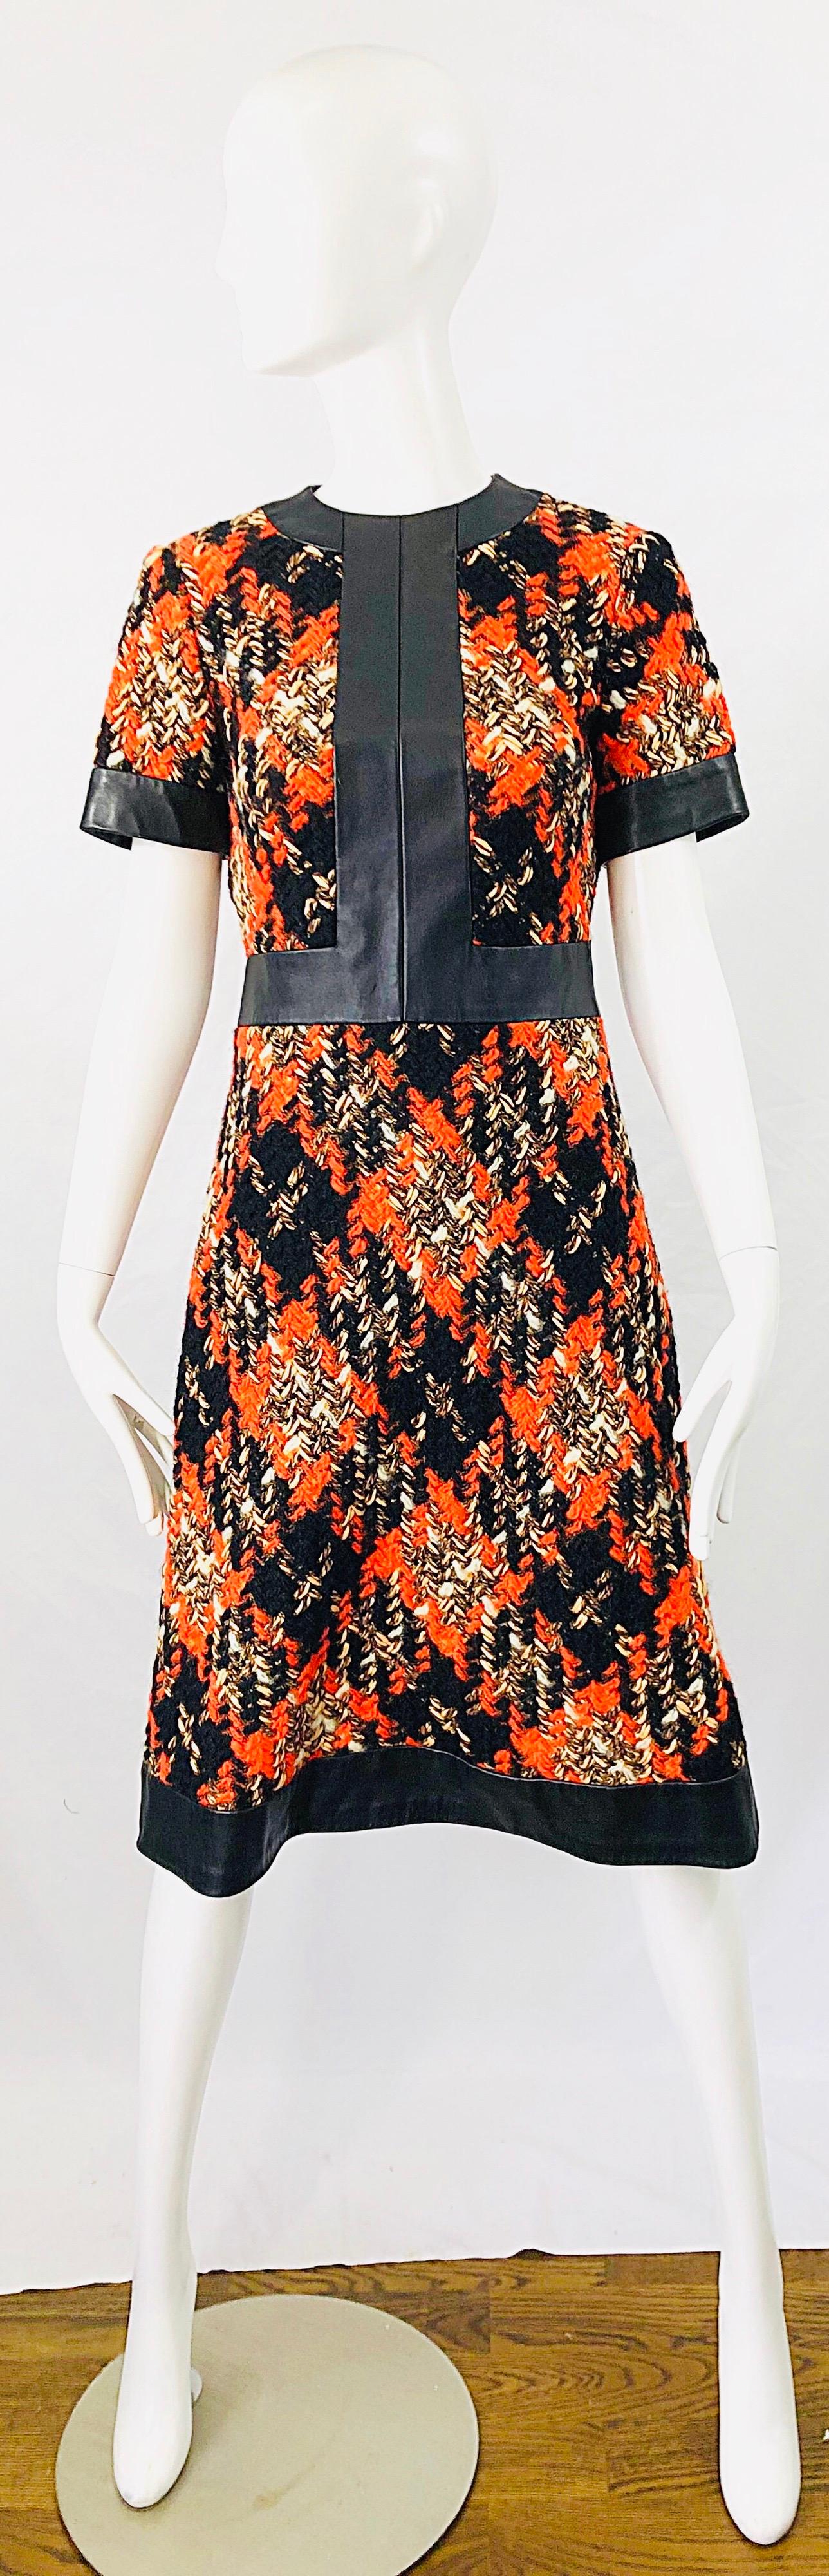 Magnifique robe A Line LOUIS FERAUD Haute Couture des années 60 en boucle et cuir ! Il est composé d'un tissu bouclé doux dans des tons chauds d'orange, de brun, de noir, de beige et d'ivoire. Accents en cuir noir sur le corsage central avant,